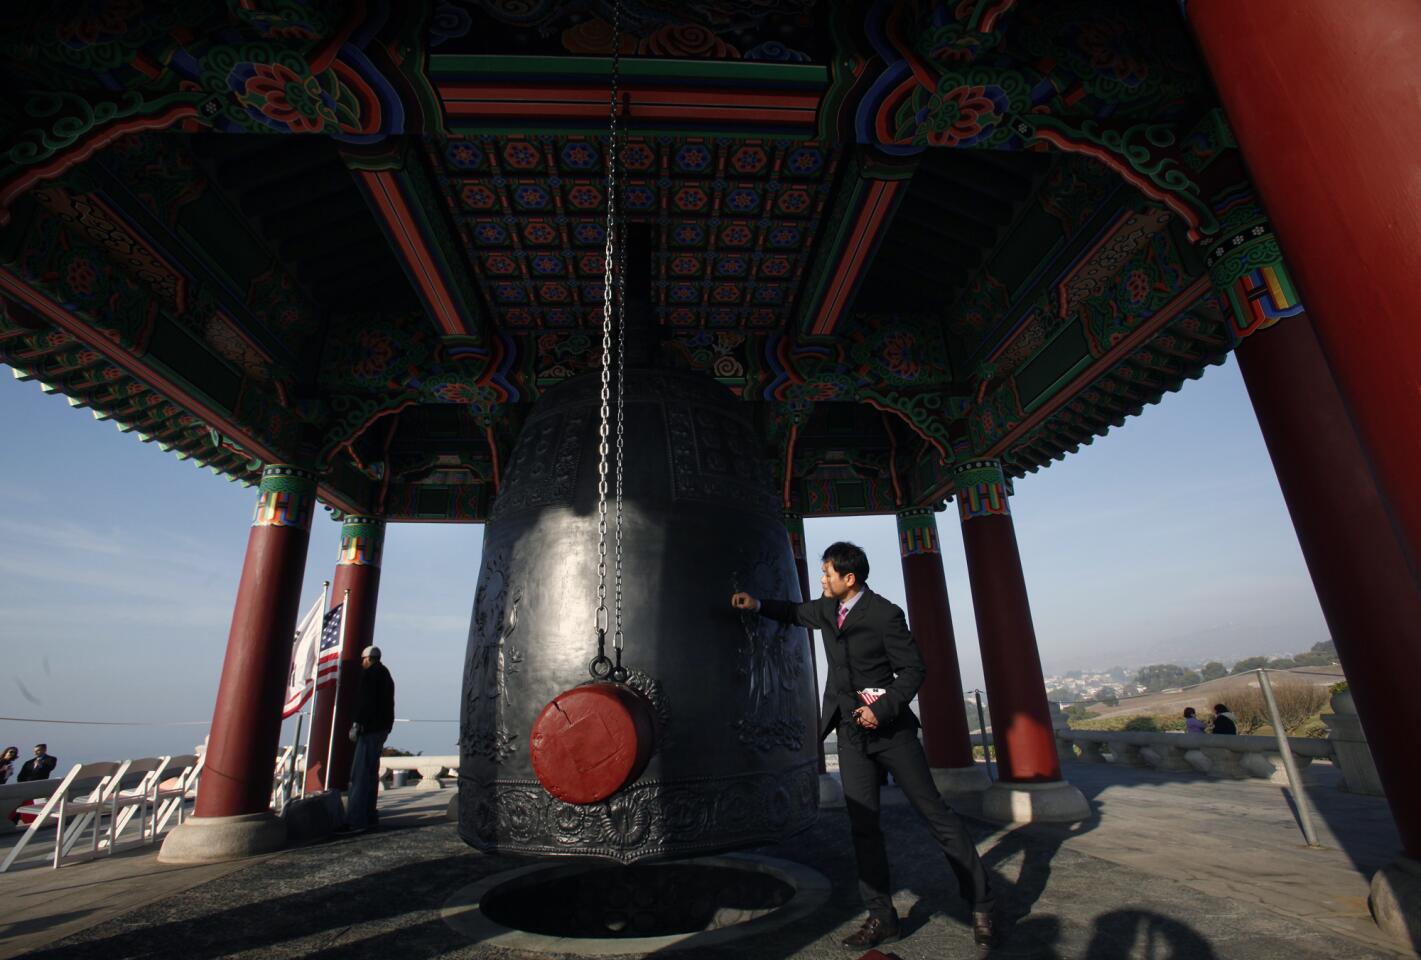 Korean bell